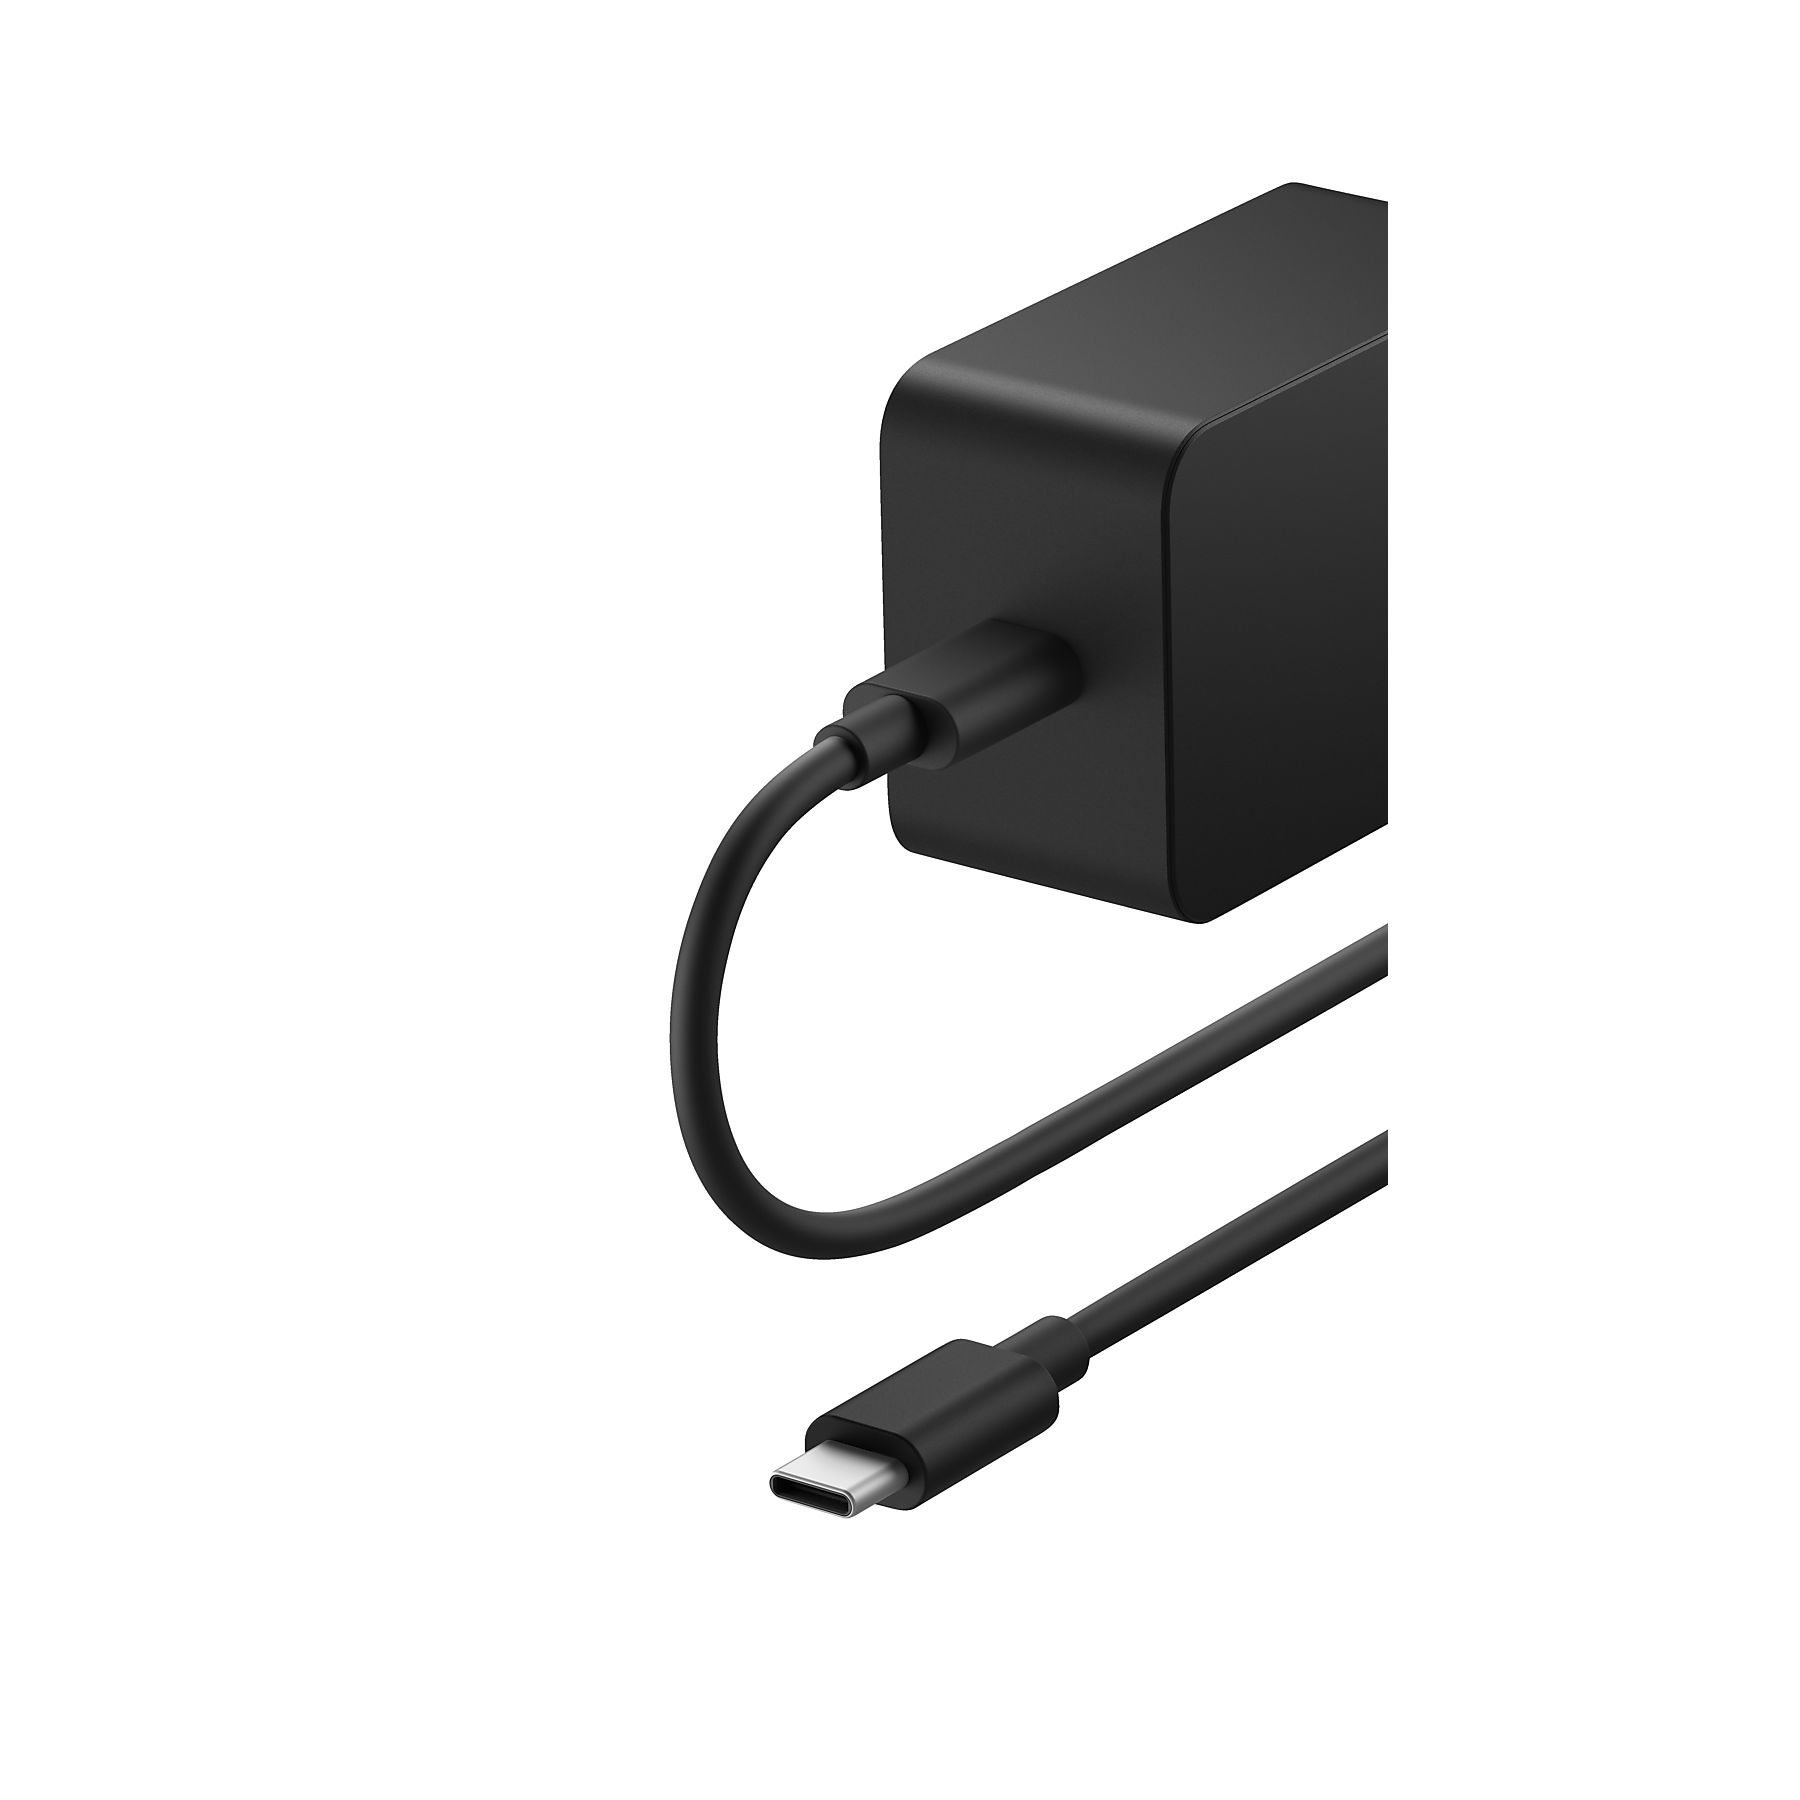 23 Watt | 0889842791945 Netzteil für schwarz - Microsoft Surface, (DKI-00003) USB-C